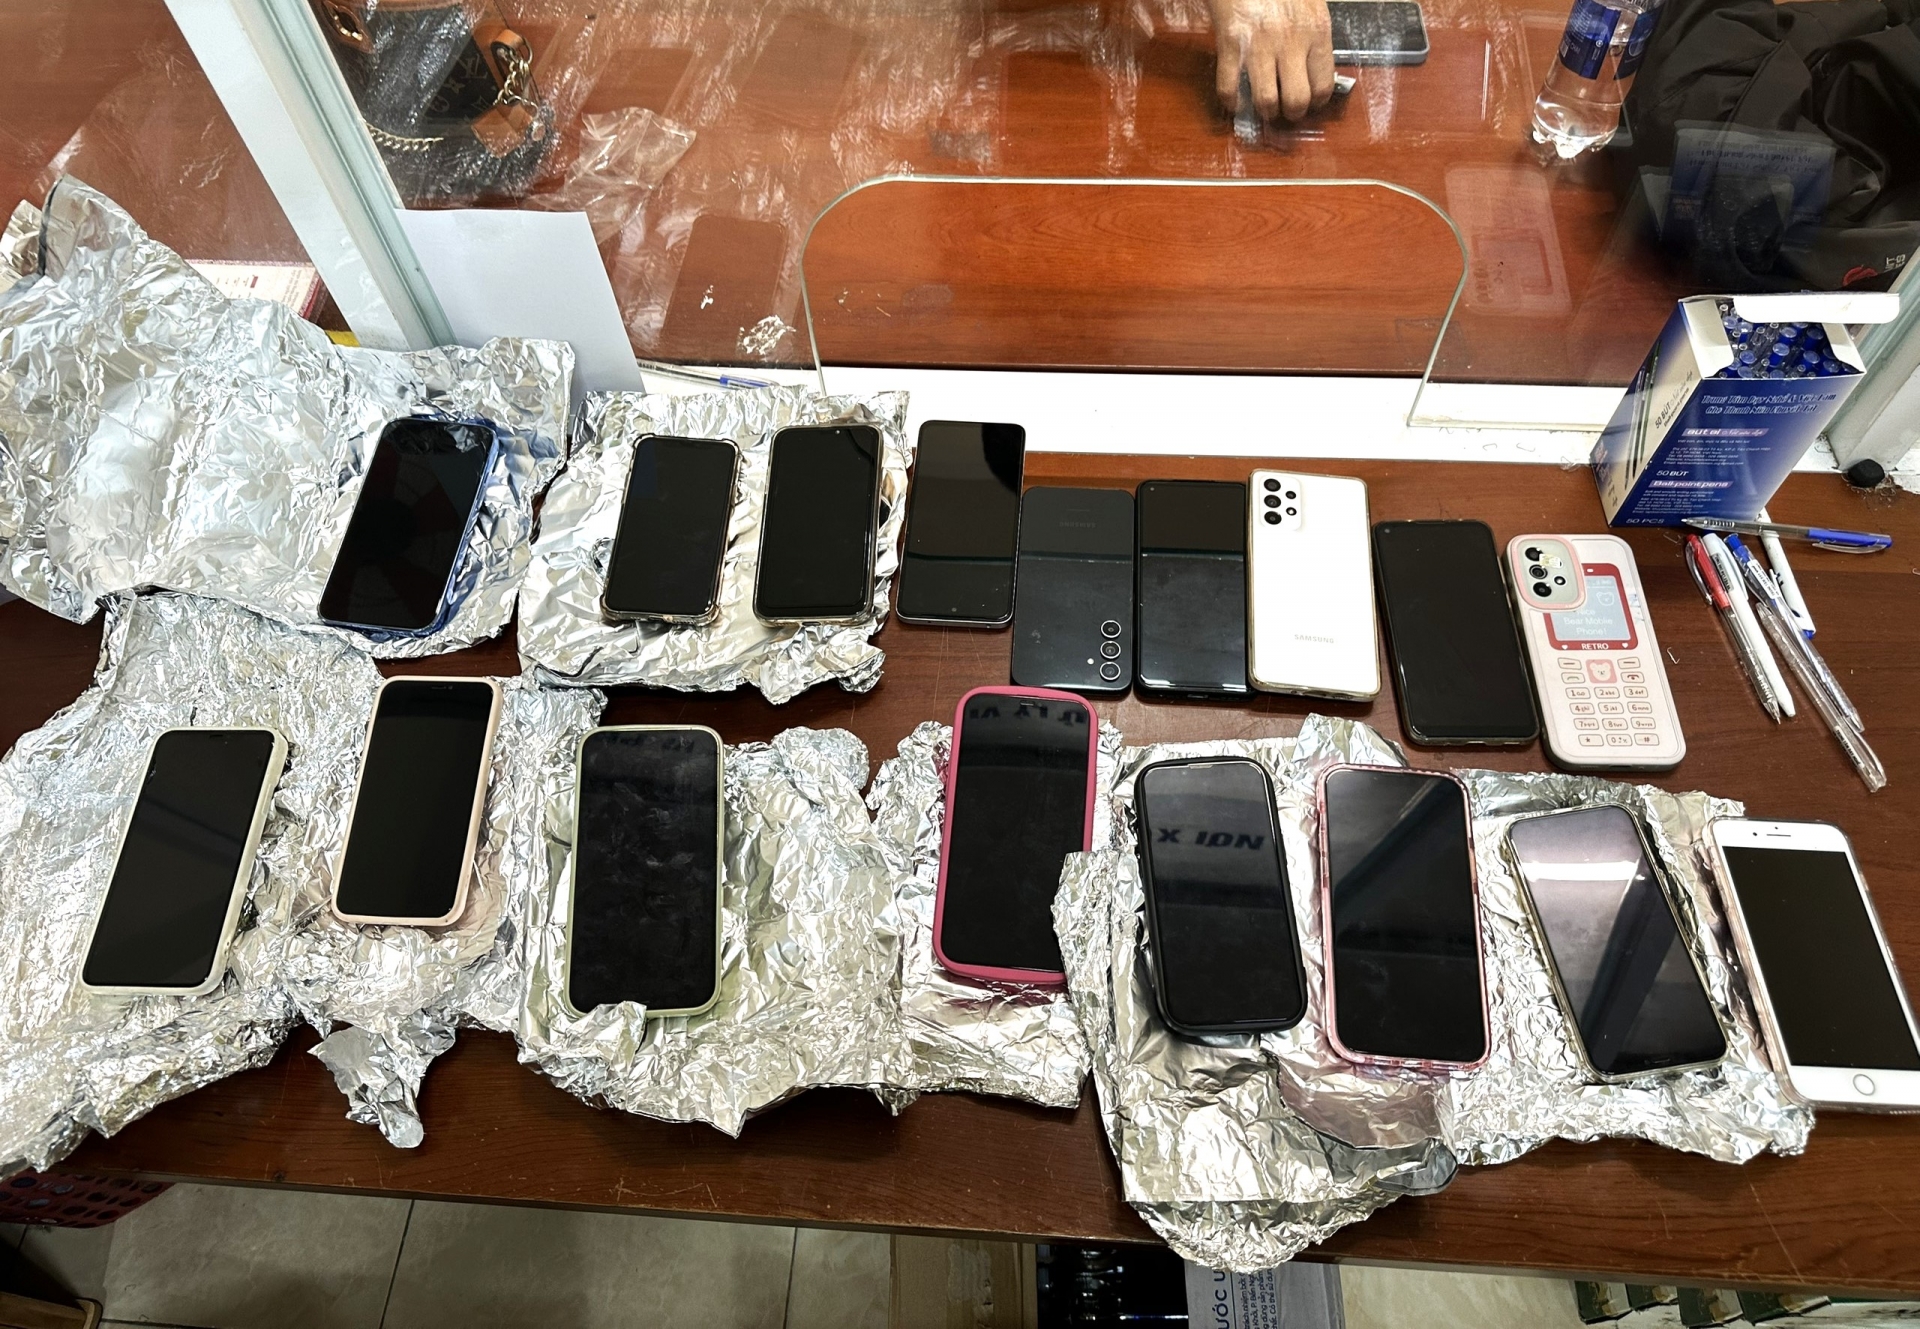 17 điện thoại di động do 3 đối tượng móc túi trộm cắp của người dân tại Hội chợ Phường 1 (TP Bảo Lộc)